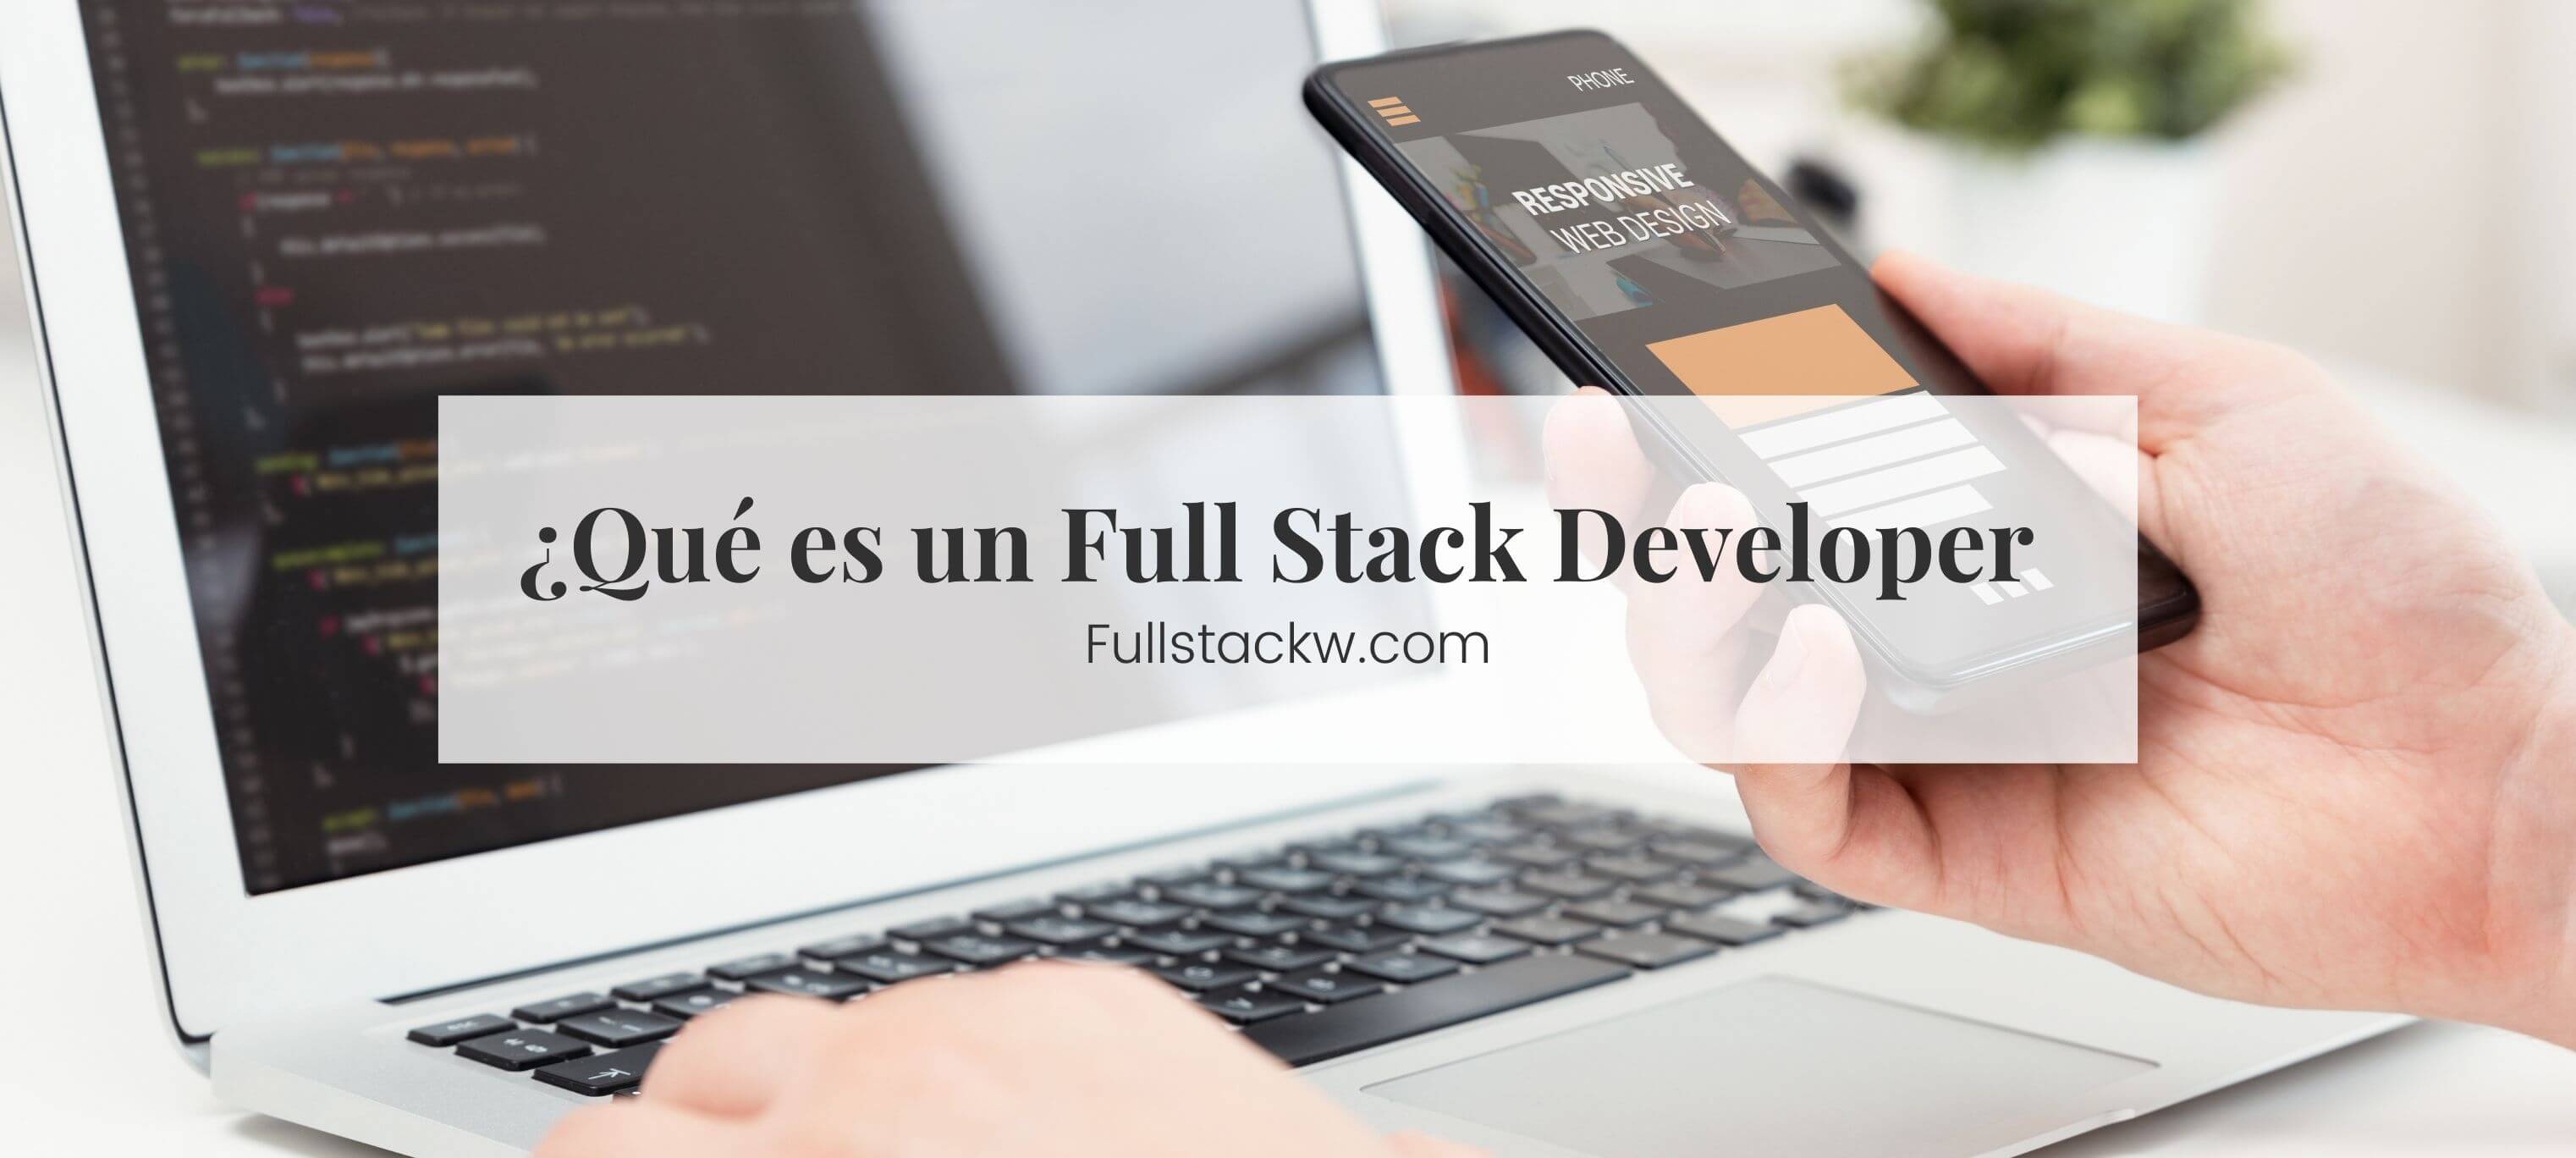 Que es un full stack developer - Portada Blog